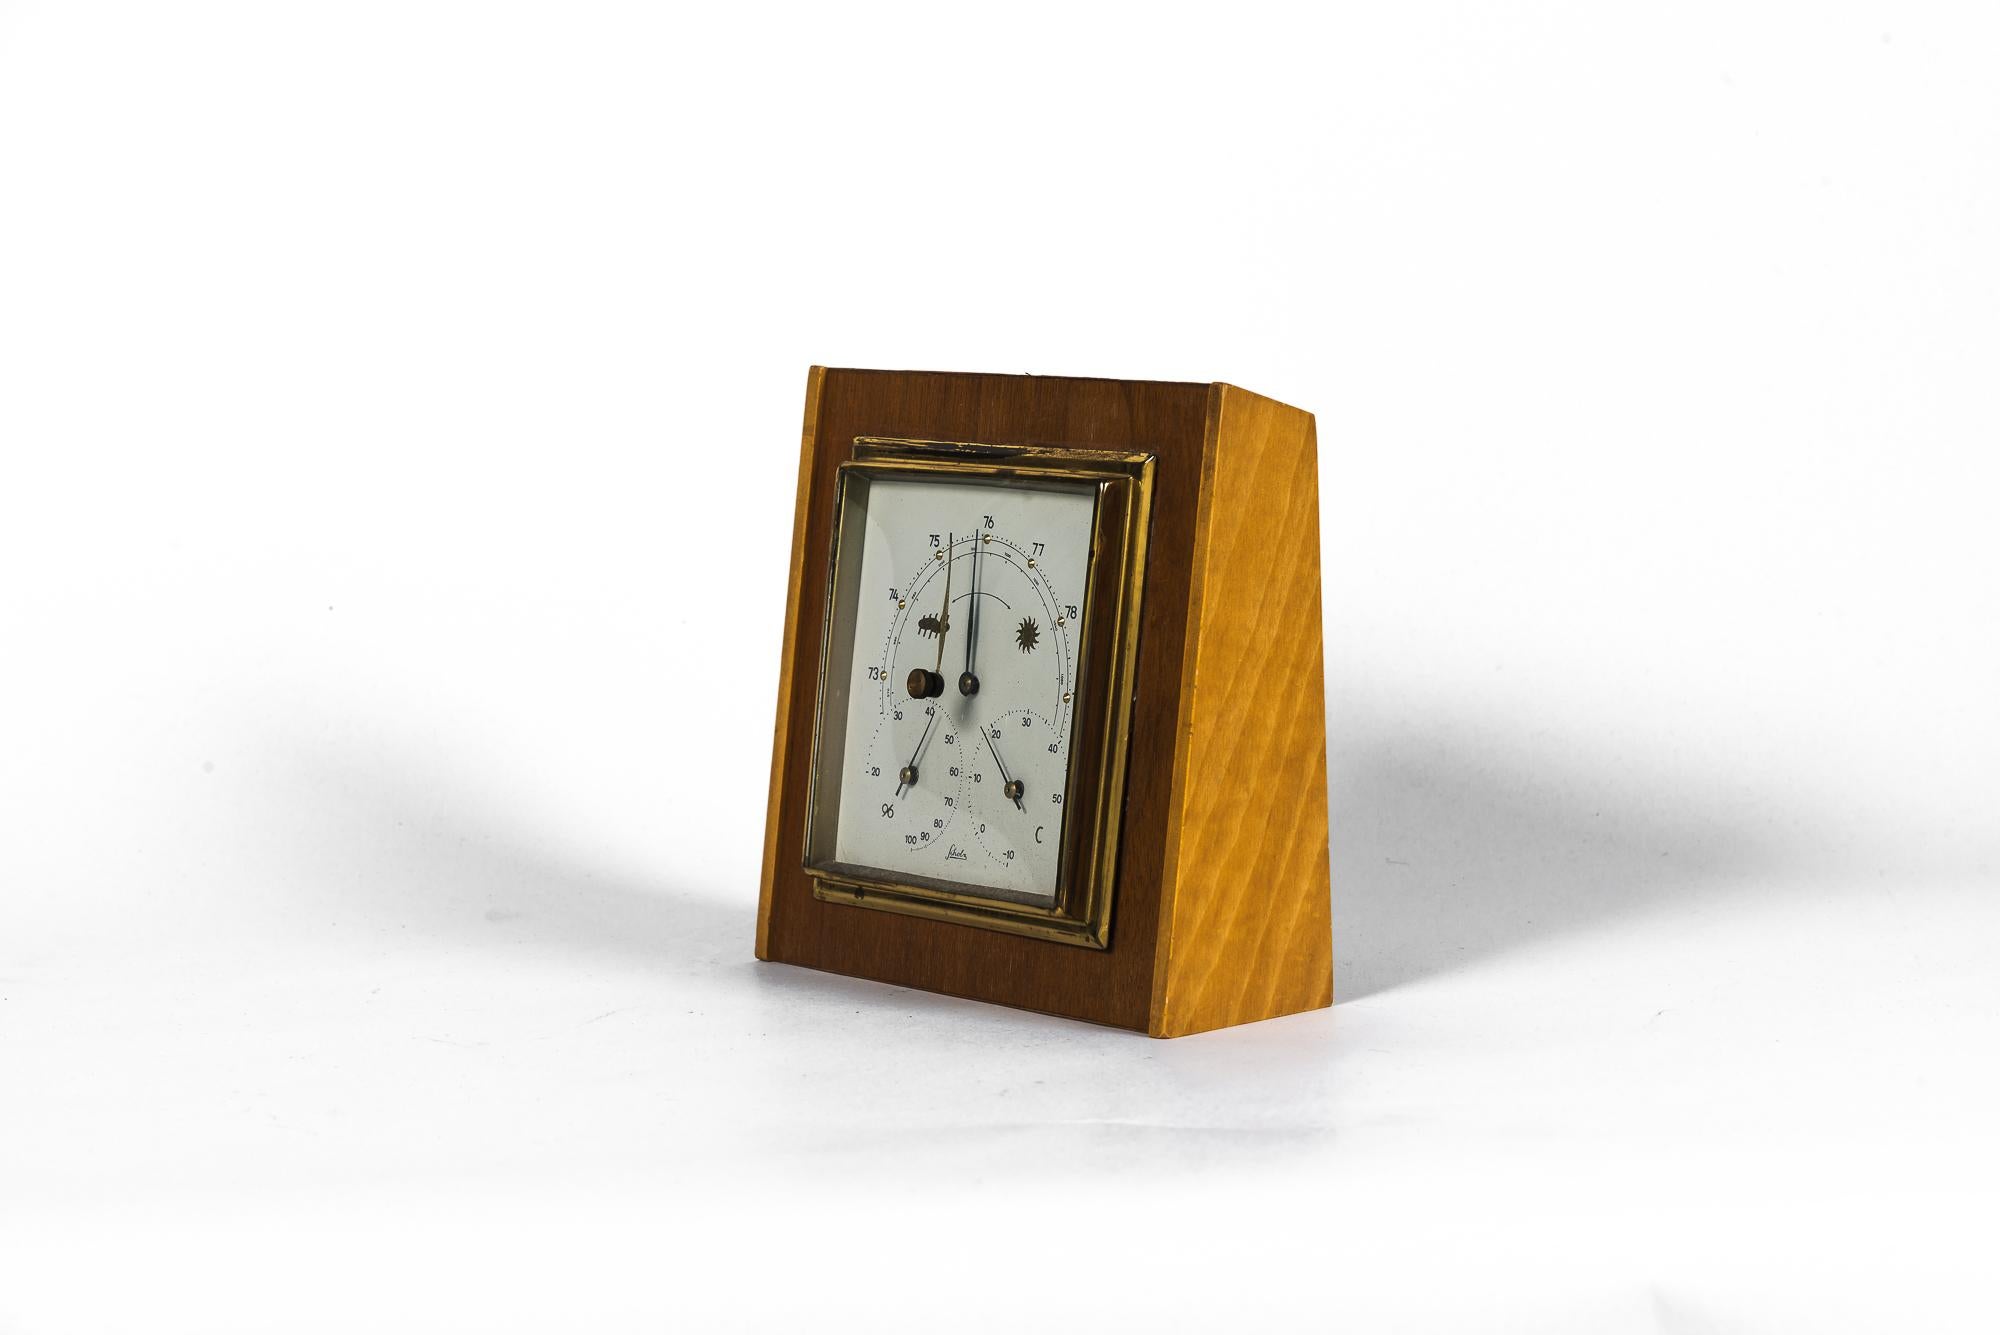 Barometer-Wetterstation Mid-Century Modern, 1960er Jahre
Originalzustand
es funktioniert.